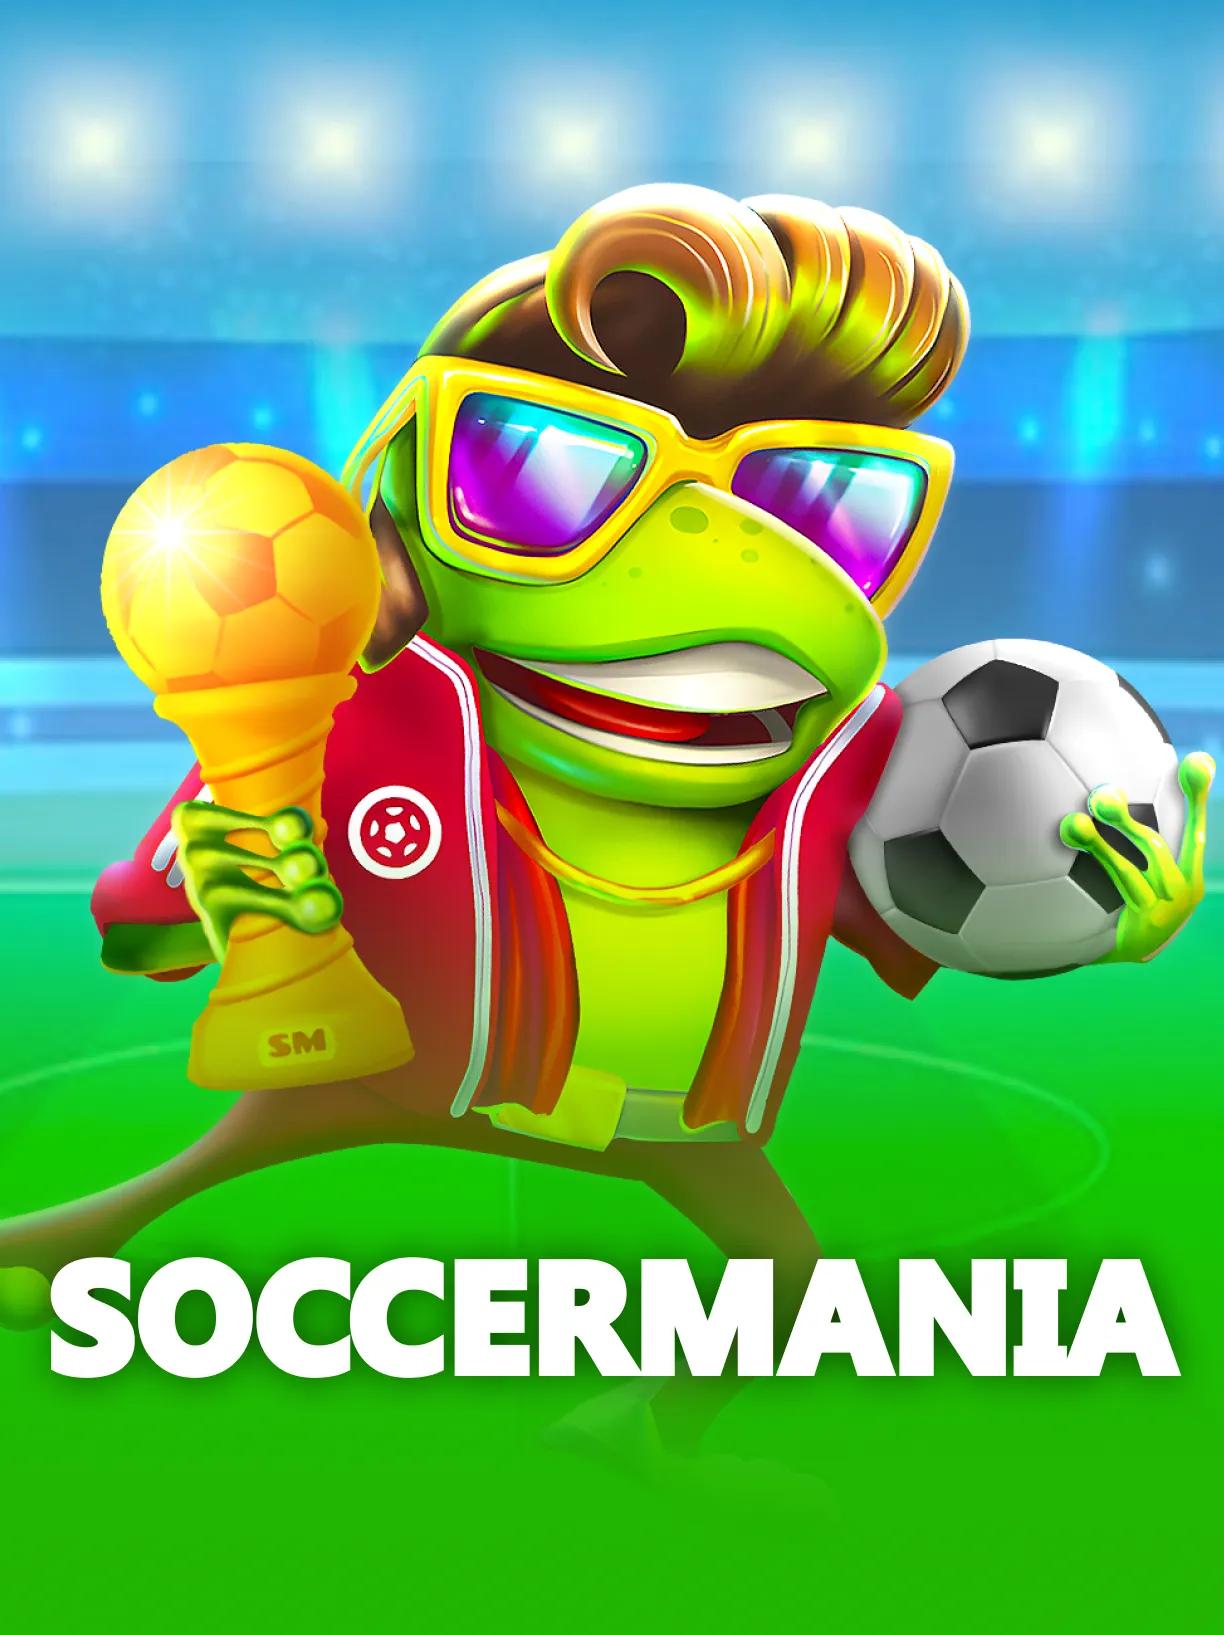 Soccermania_square.webp